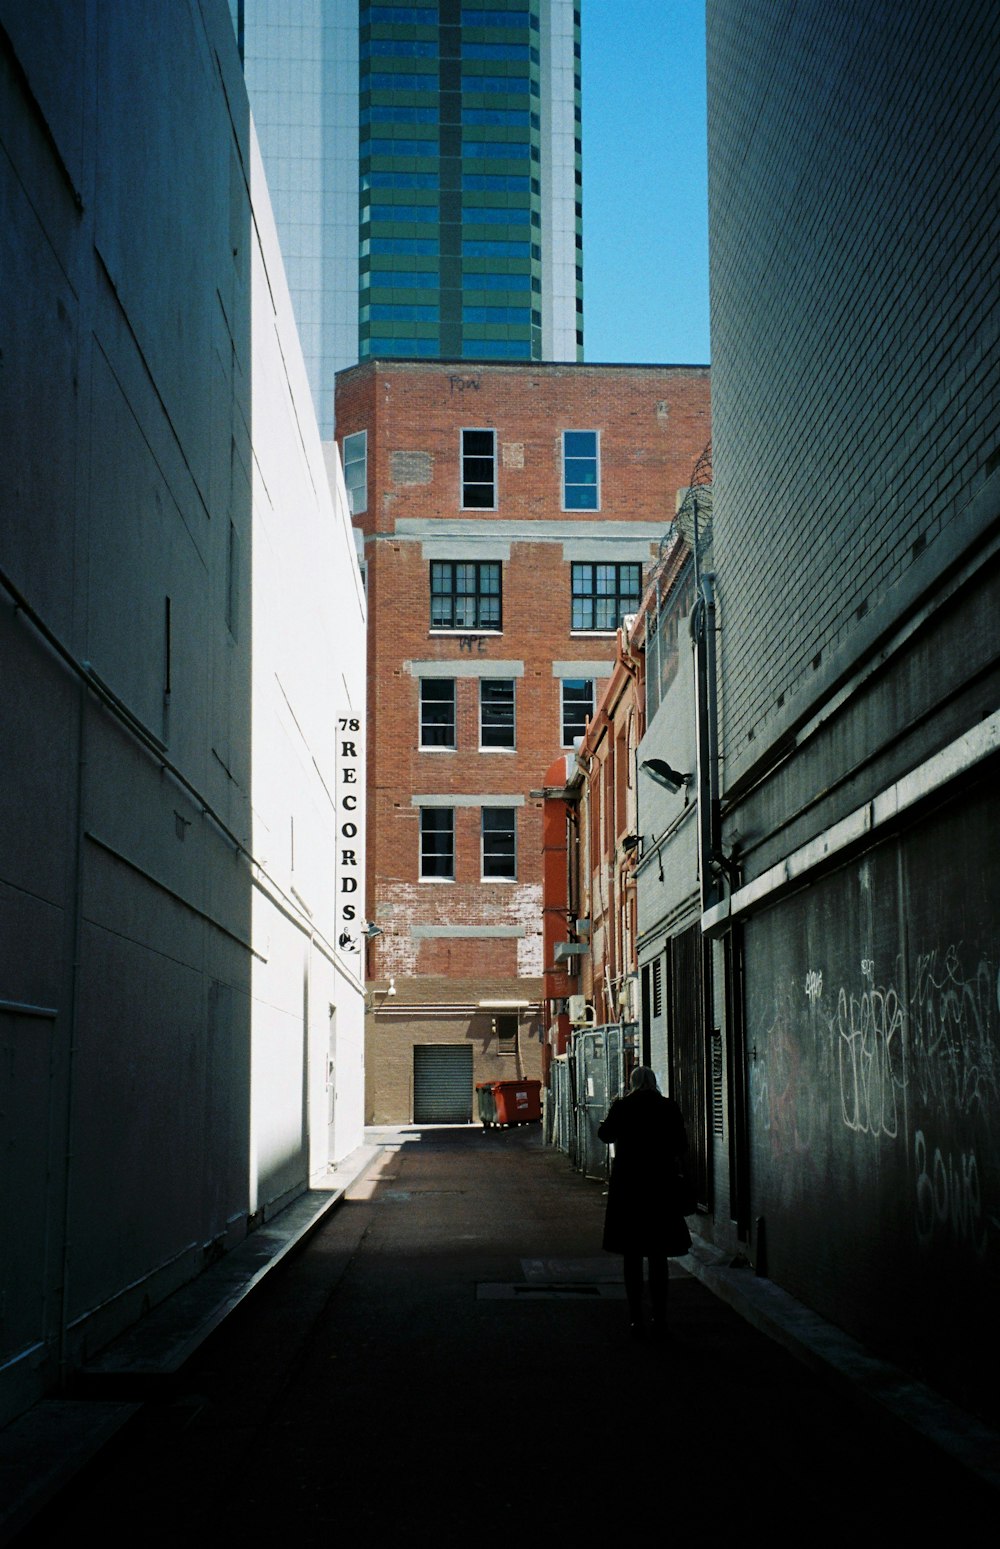 pathways across brown building